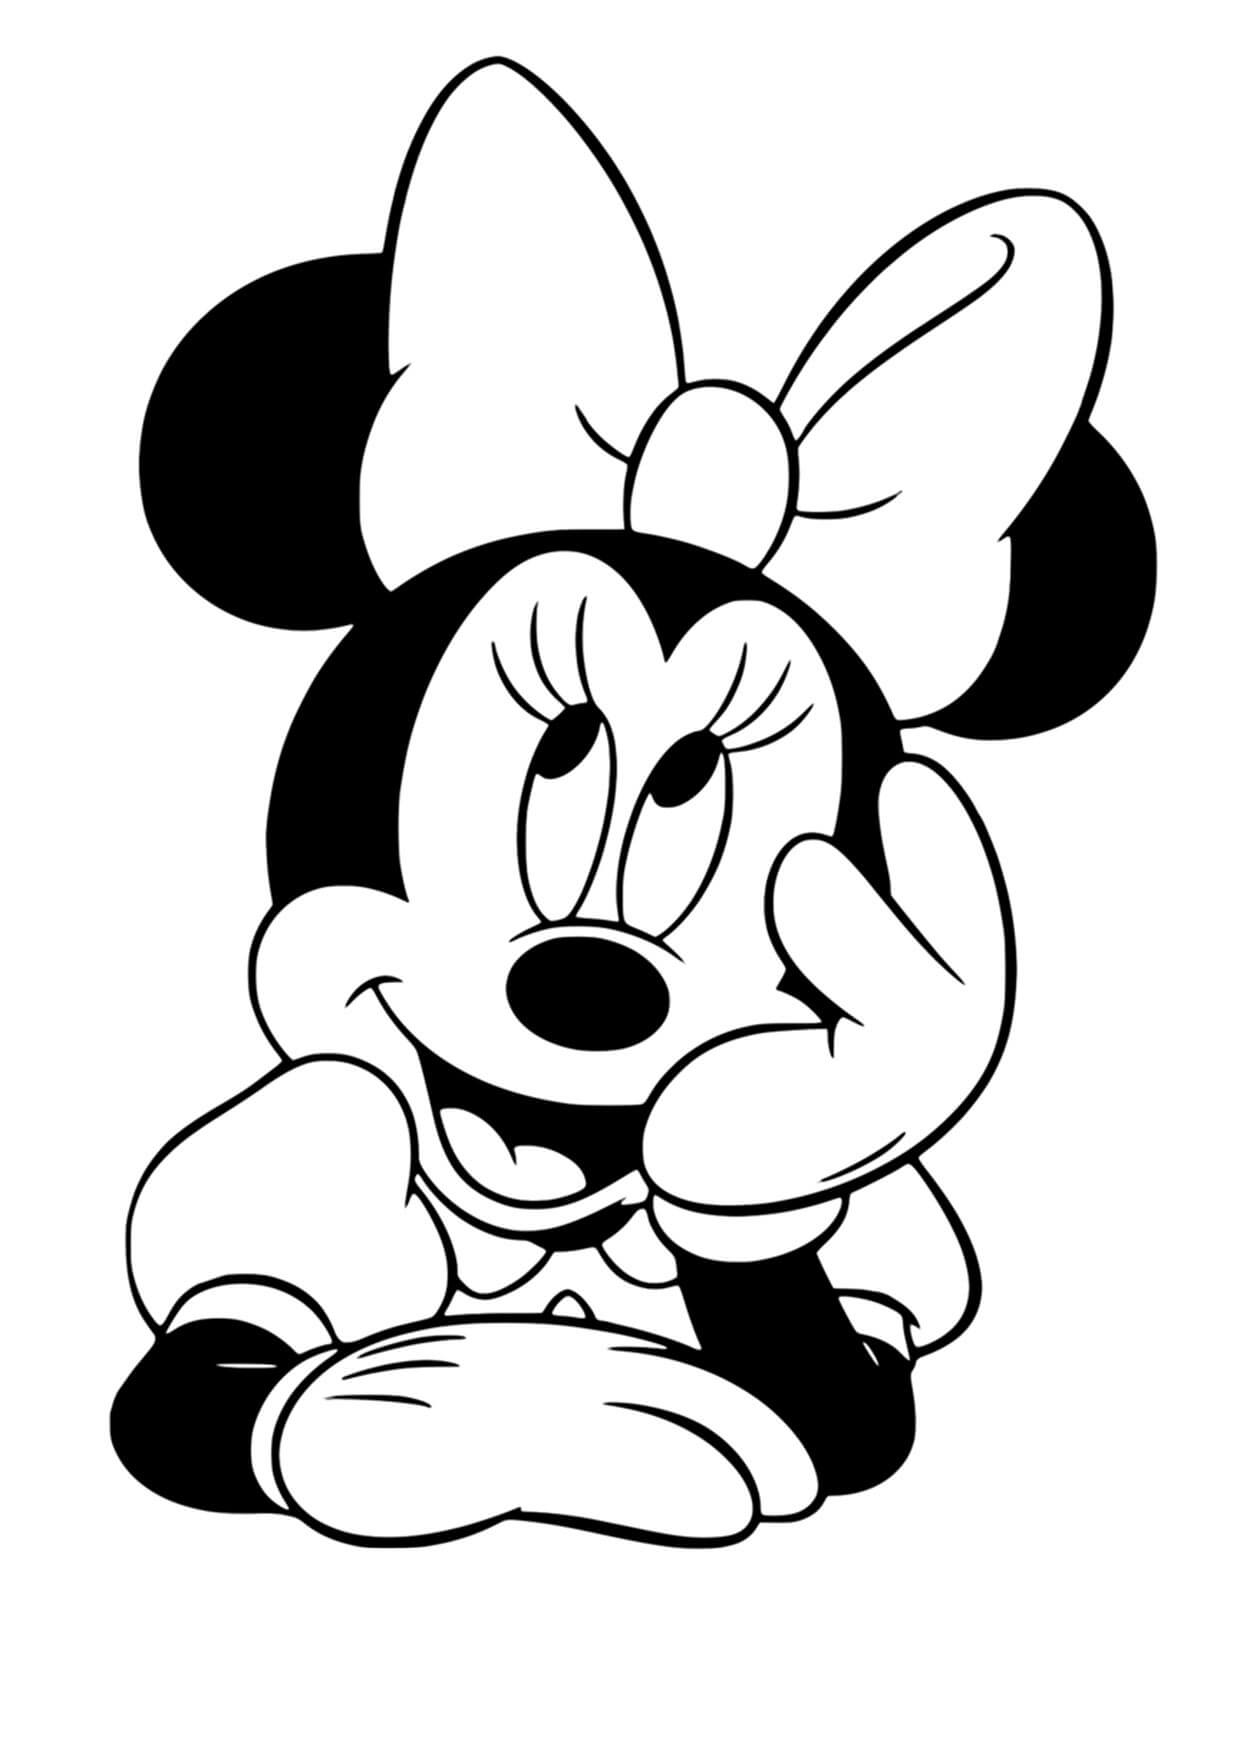 Retrato de Minnie Mouse